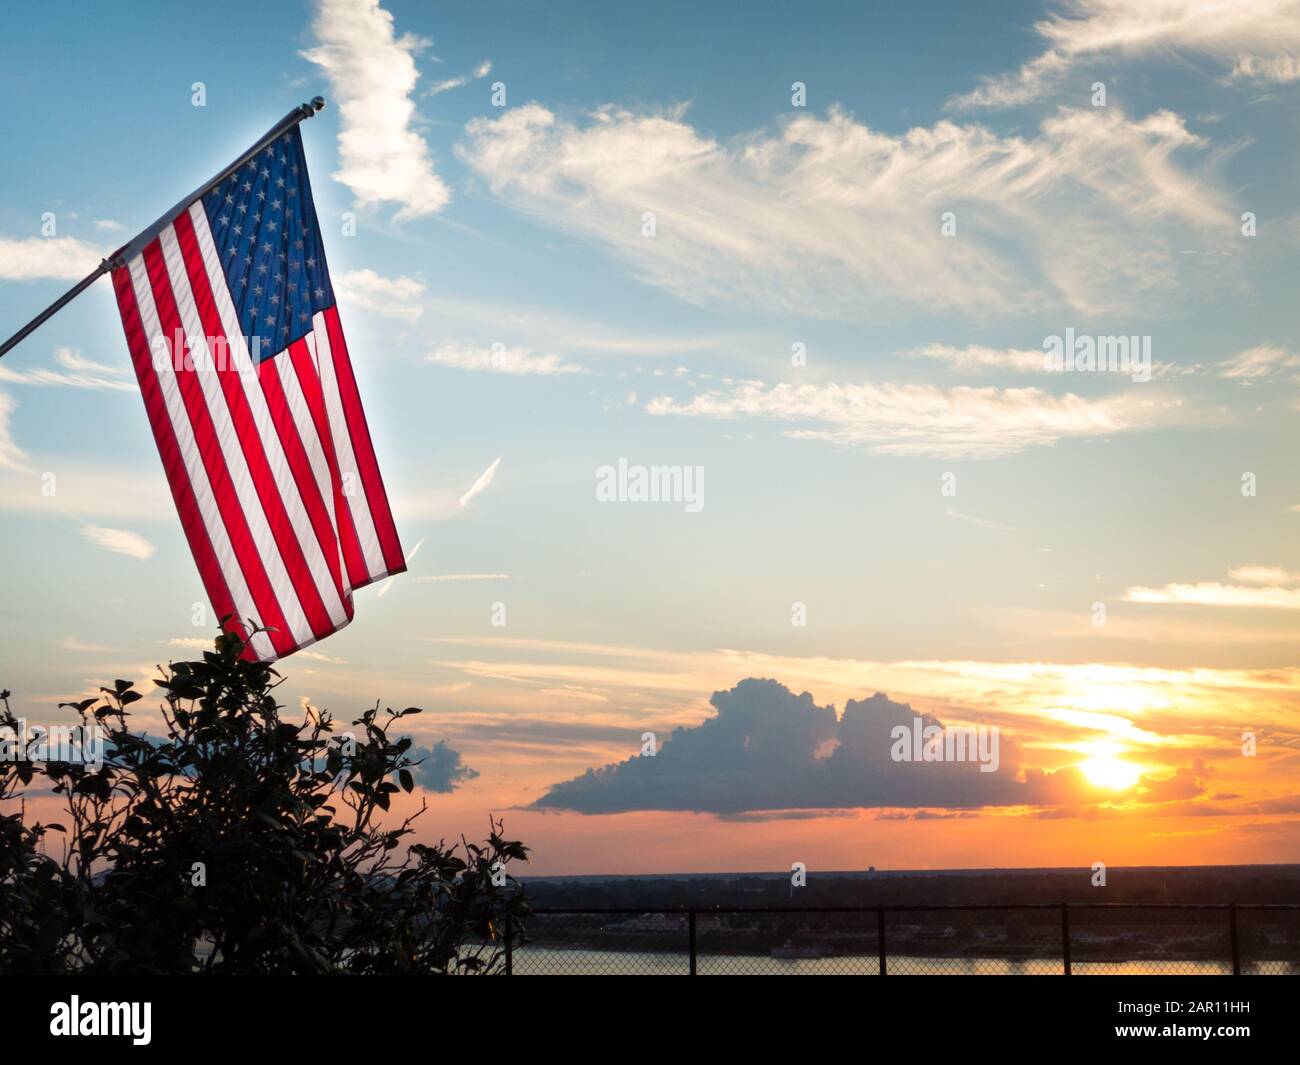 Drapeau américain brillant volant au-dessus du magnifique coucher de soleil sur le fleuve Mississippi. Symbole du patriotisme et de la paix. L'arrière-plan affiche les nuages éclairés i Banque D'Images